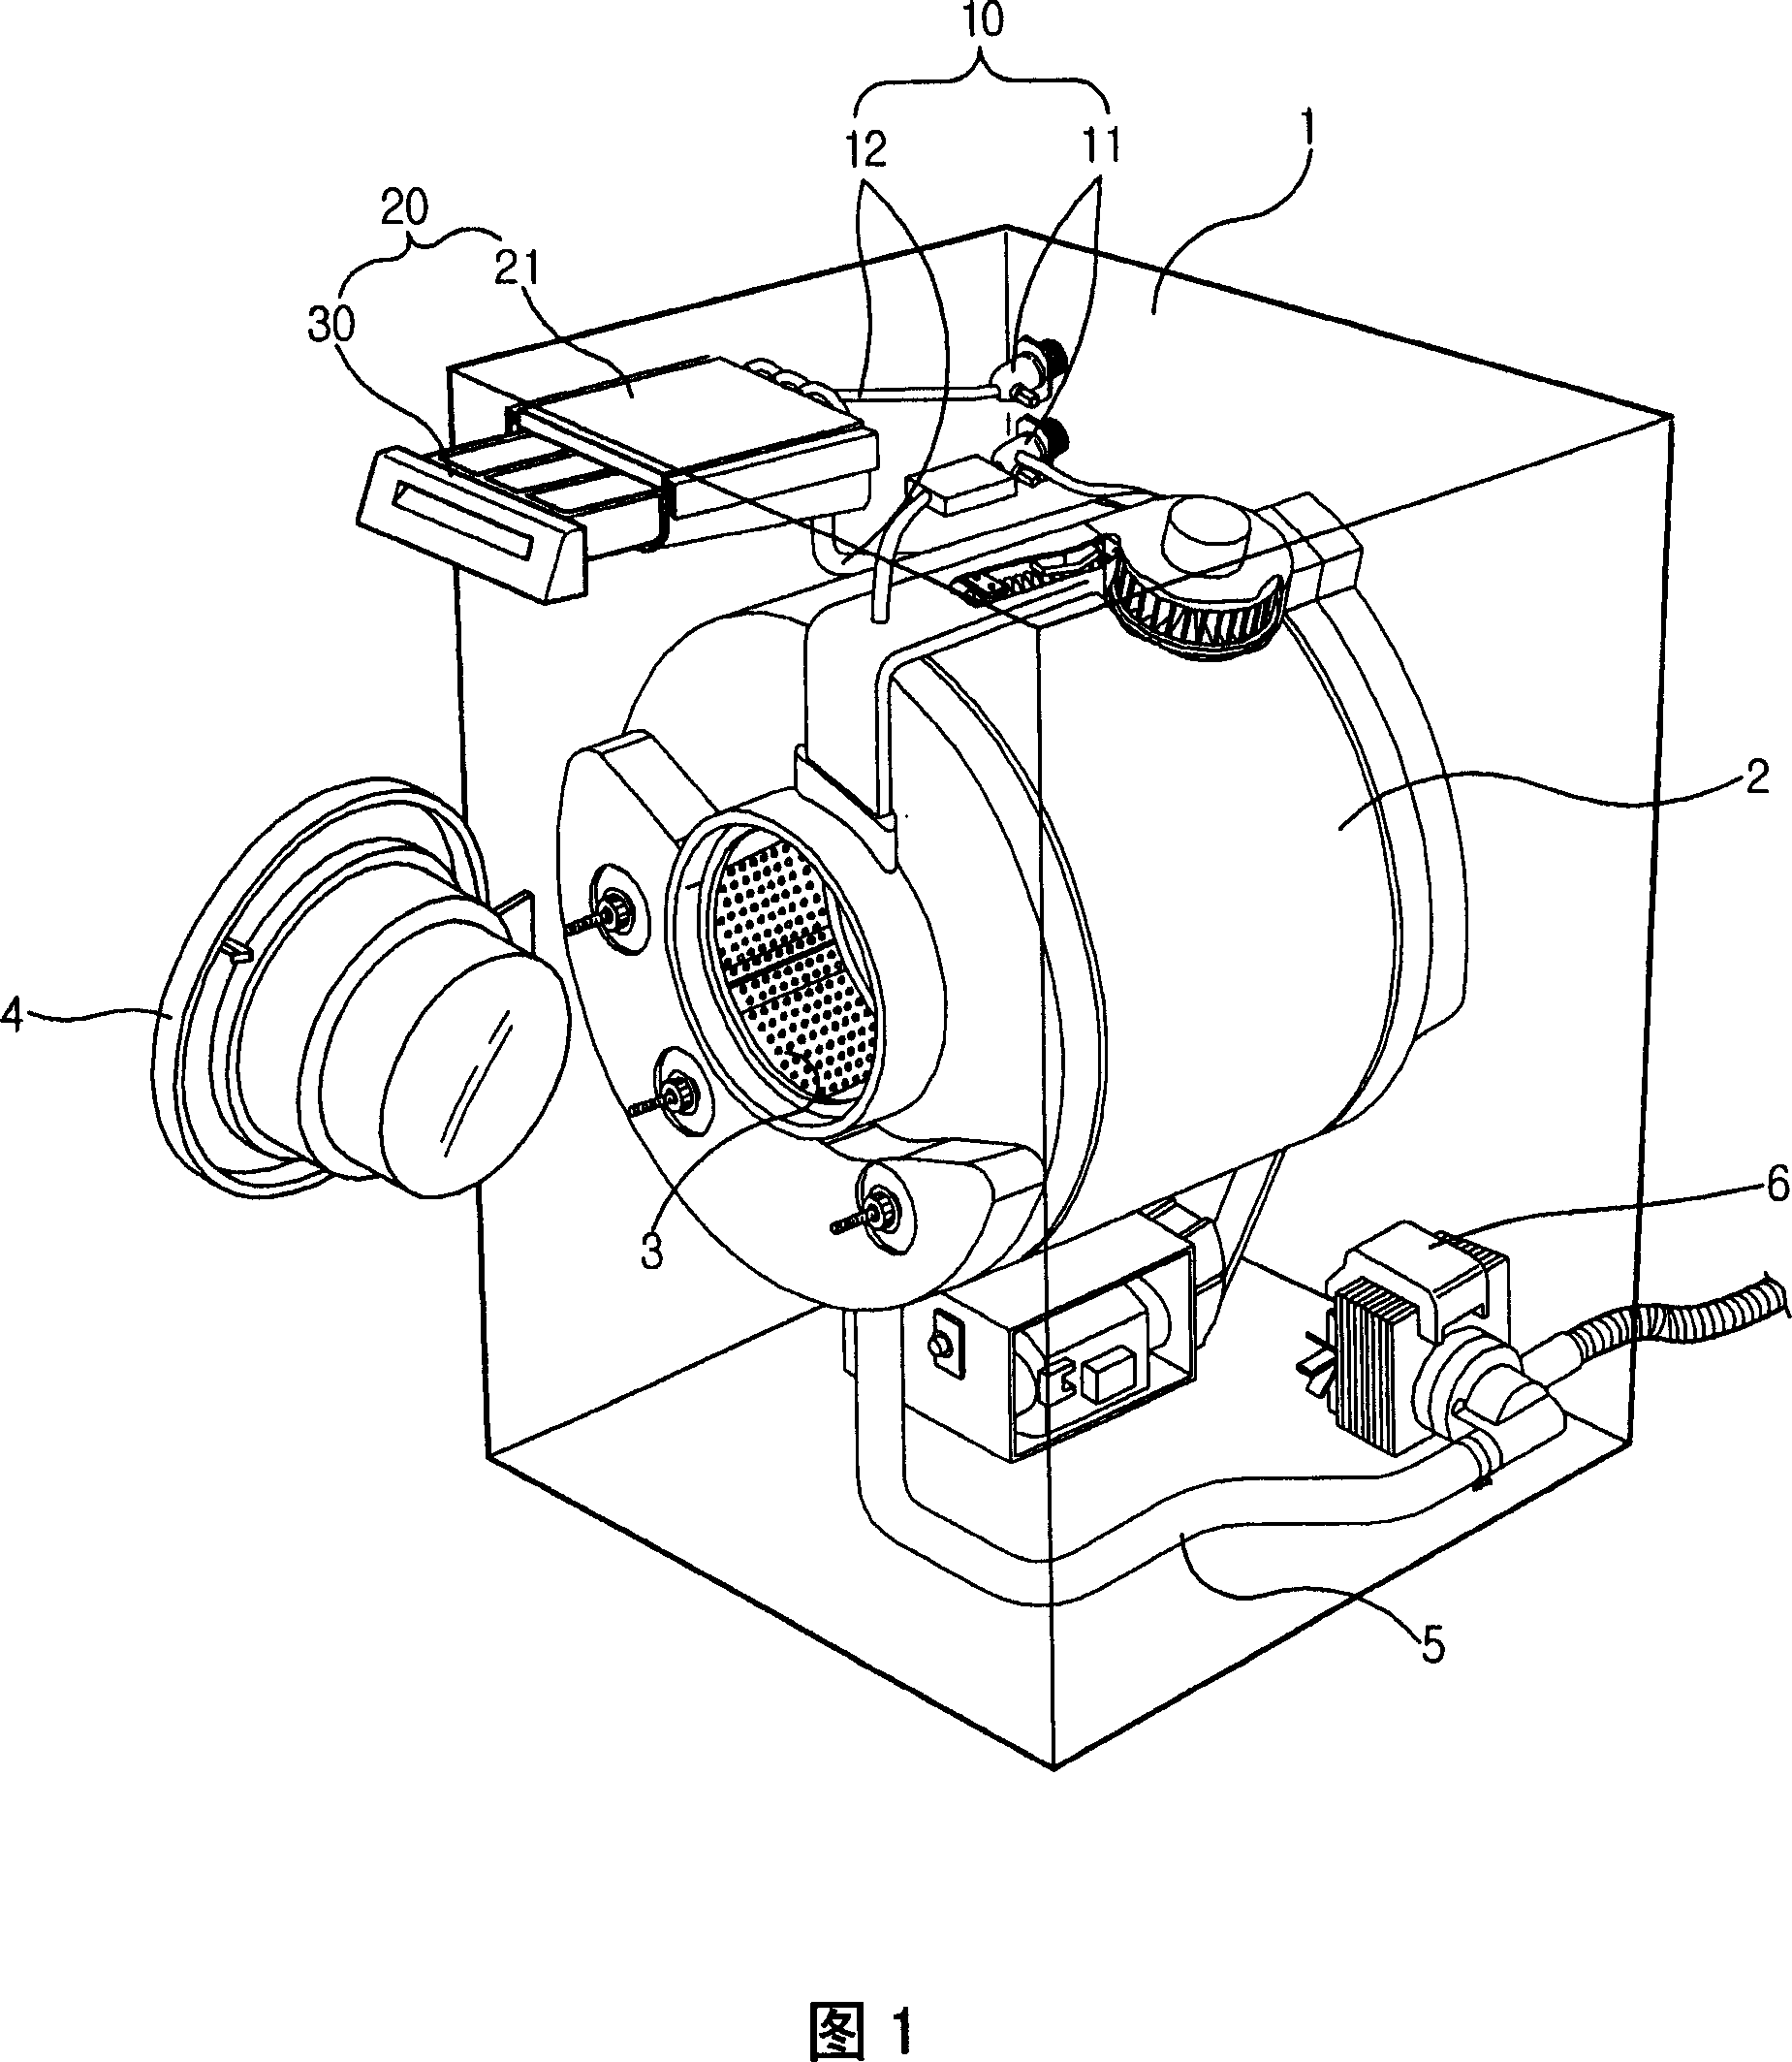 Detergent supply apparatus of washing machine